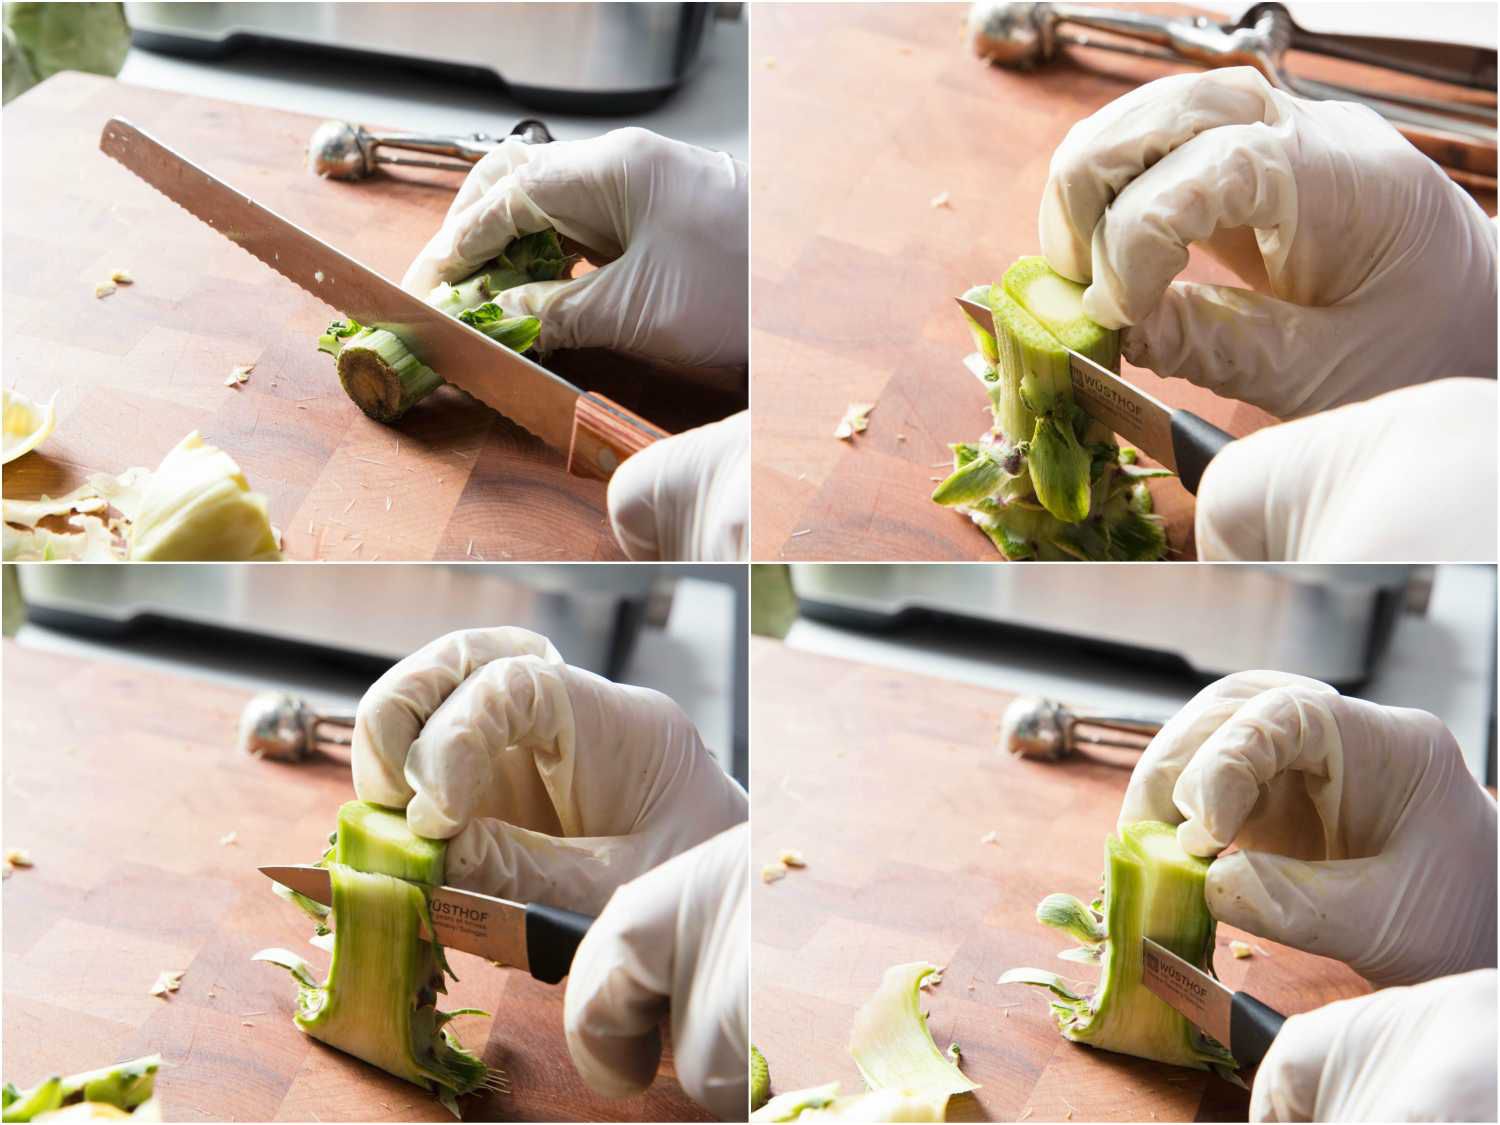 修整洋蓟茎的拼贴:用锯齿刀切去末端，用削皮刀切去坚硬的外部